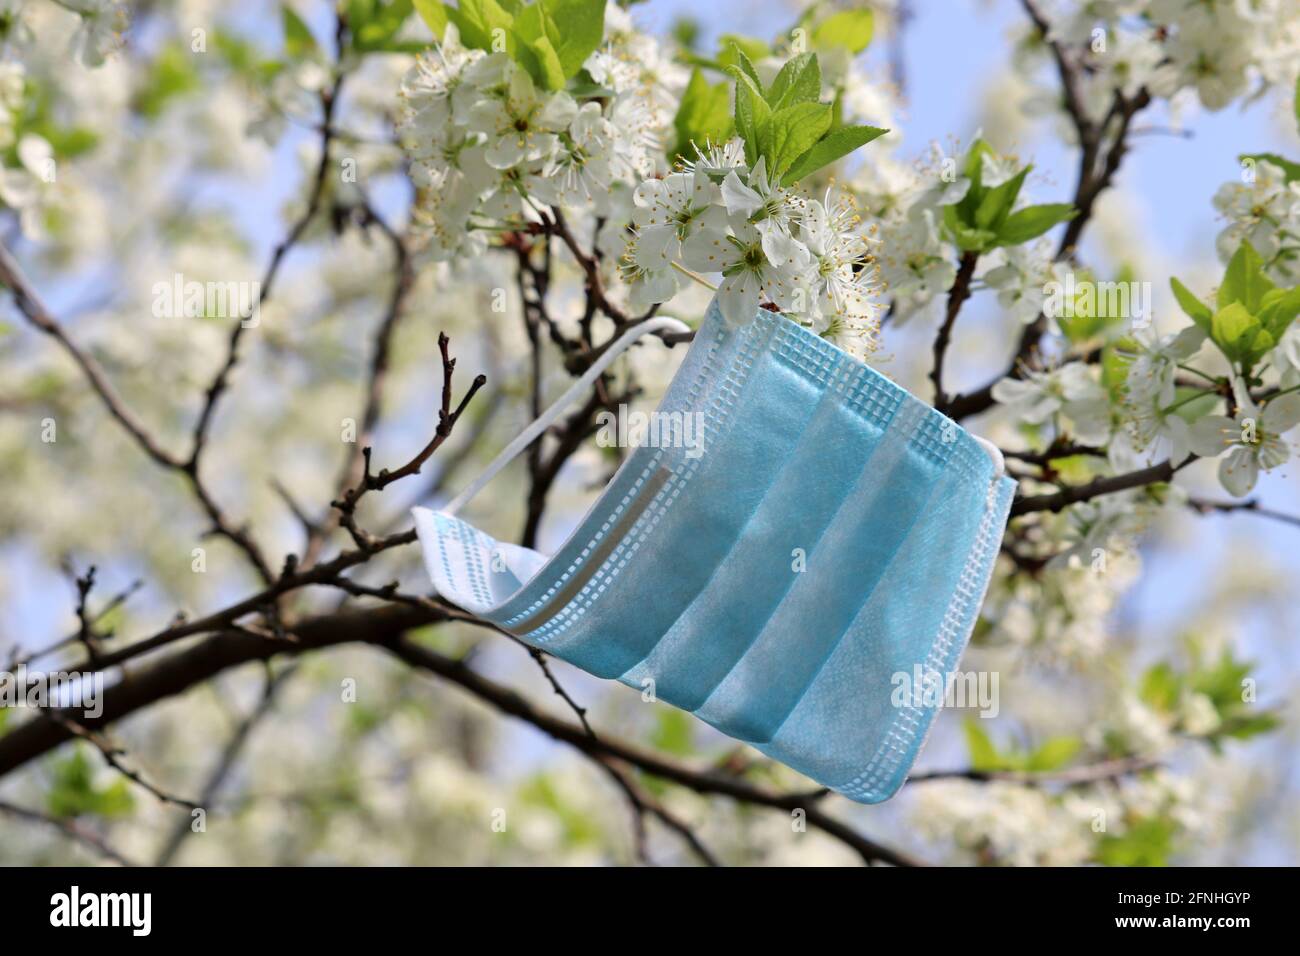 Maschera medica su un ramo con fiore di ciliegio. Fiori bianchi in primavera, concetto di fine quarantena durante la covid-19 coronavirus pandemia Foto Stock